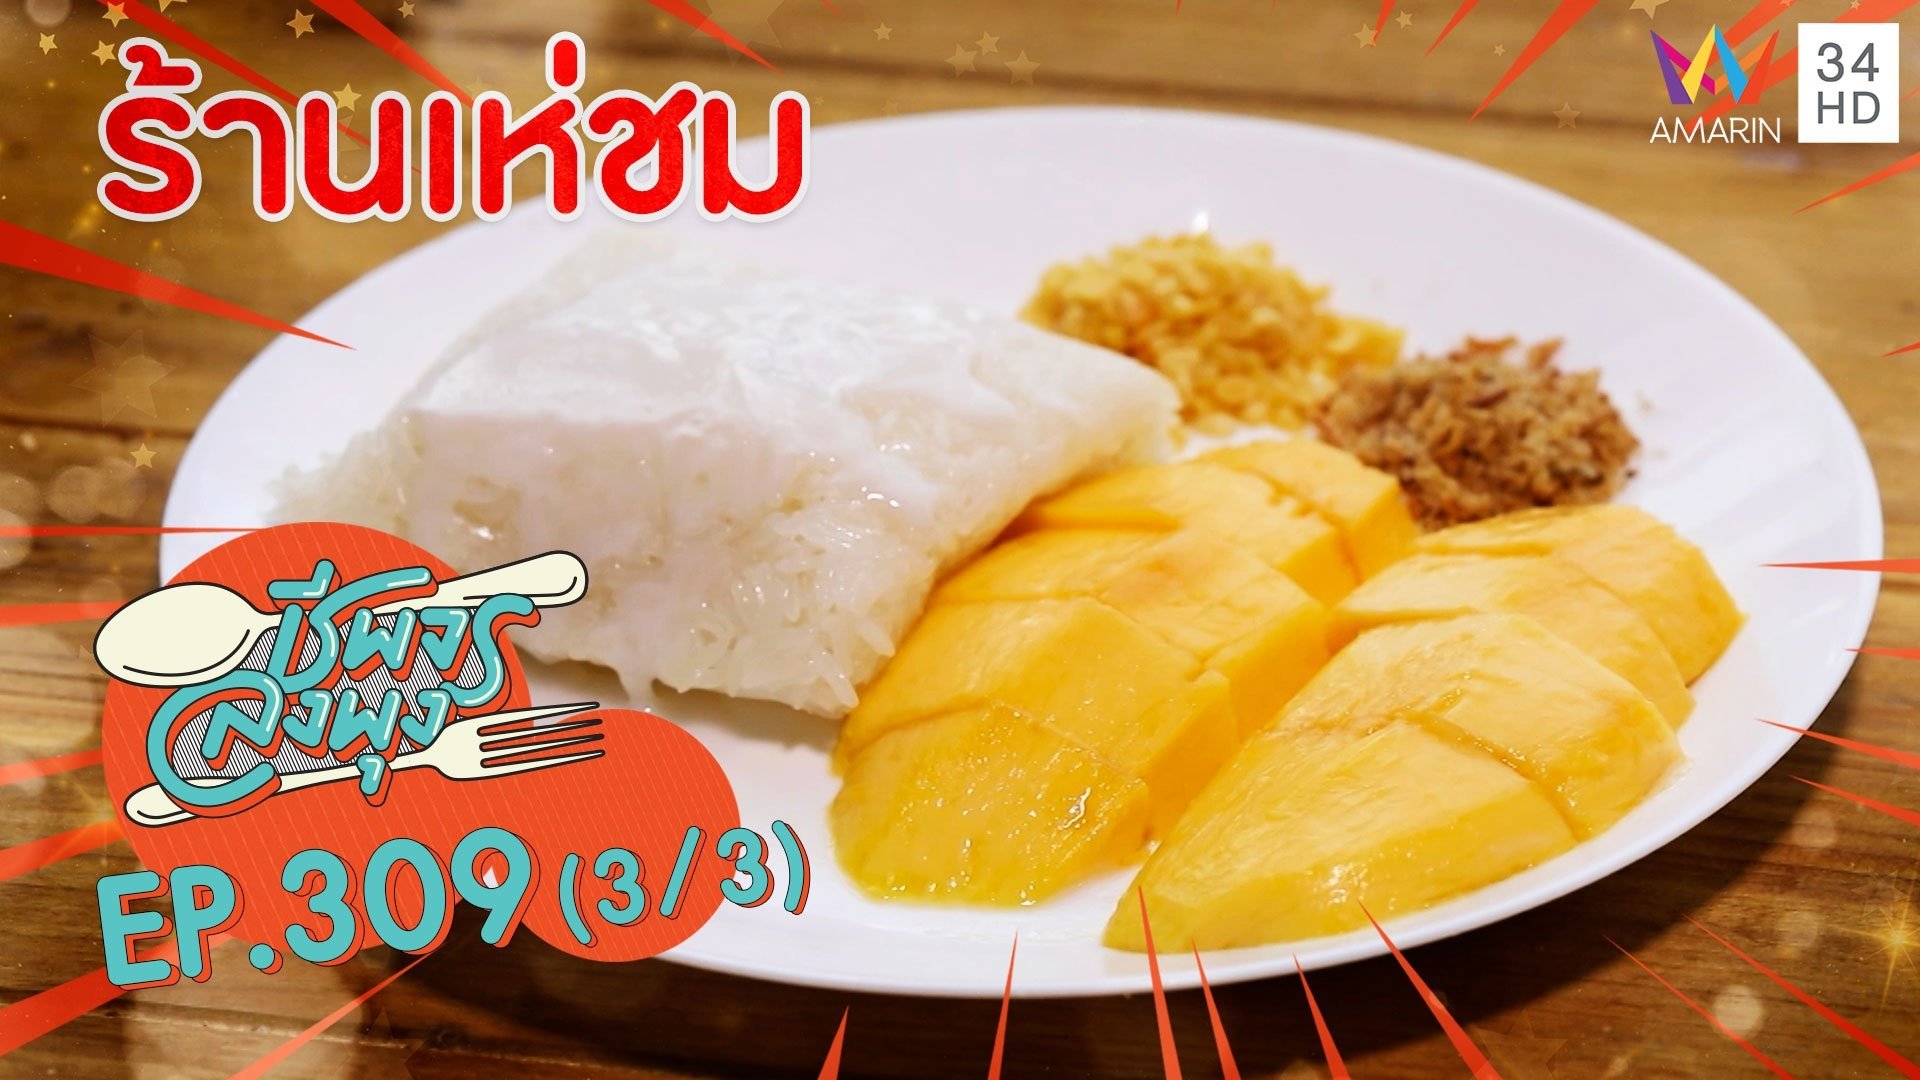 คุณพระ ! ขนมไทยโบราณหรูหรา งดงาม รสเลิศ @ ร้านเห่ชม | ชีพจรลงพุง | 4 ก.ค. 64 (3/3) | AMARIN TVHD34